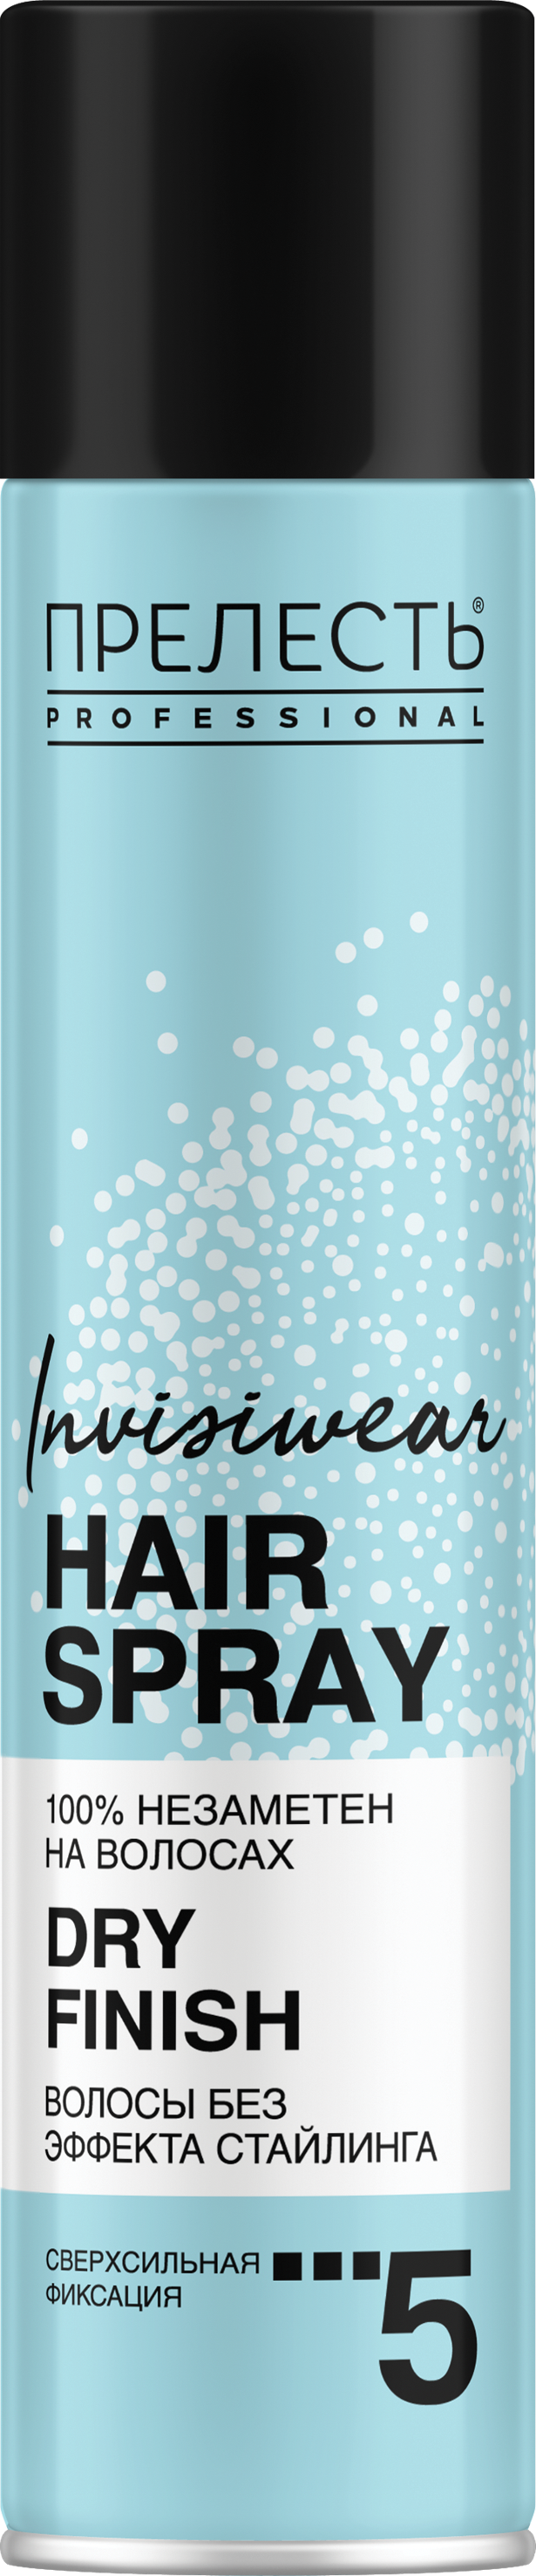 ультралегкий сухой лак для волос shaper zero gravity Лак для волос Прелесть Invisiwear Невесомый, сухое распыление, 300 мл